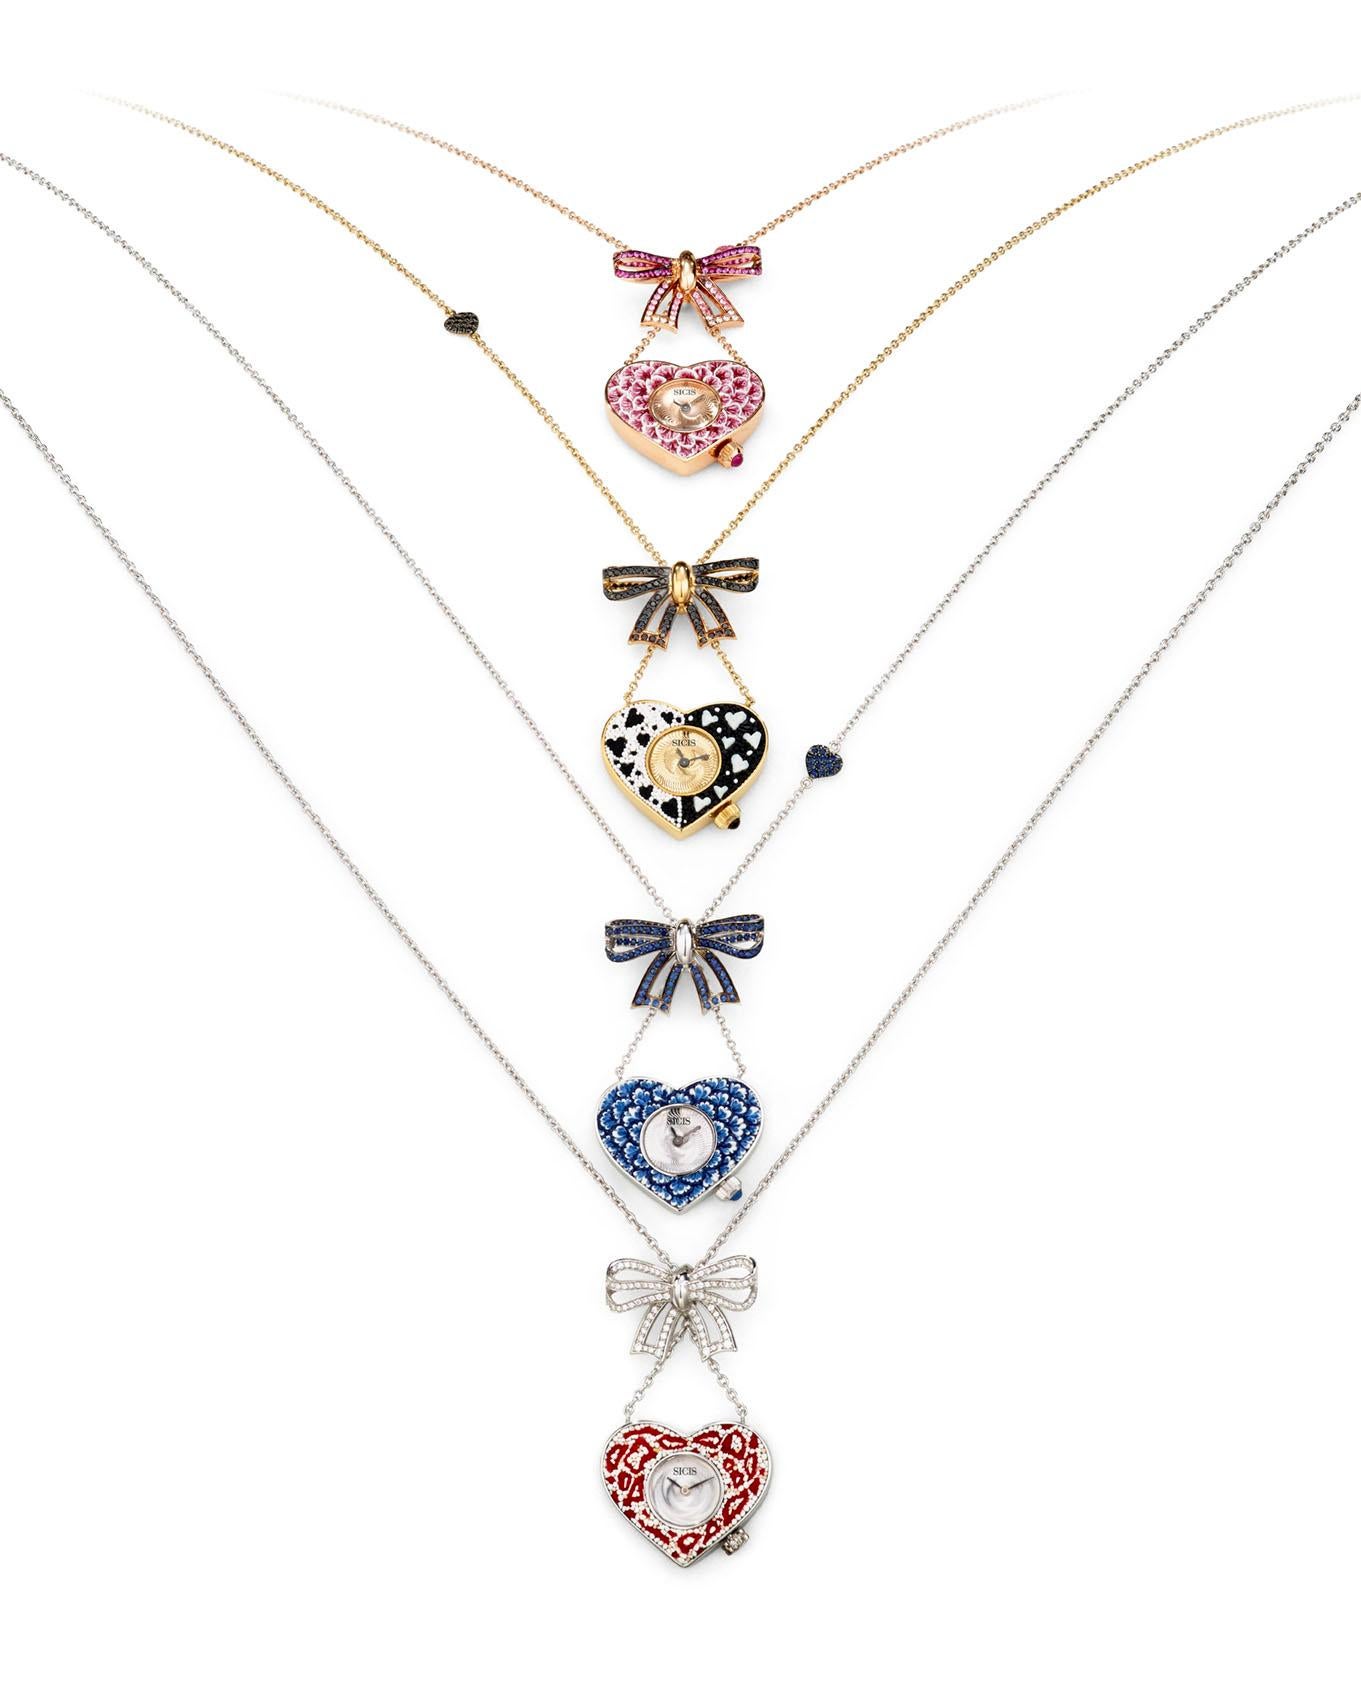 Stilvolle Quarz-Uhr-Halskette, Gold, weiße und schwarze Diamanten, NanoMosaik, verziert (Romantik) im Angebot